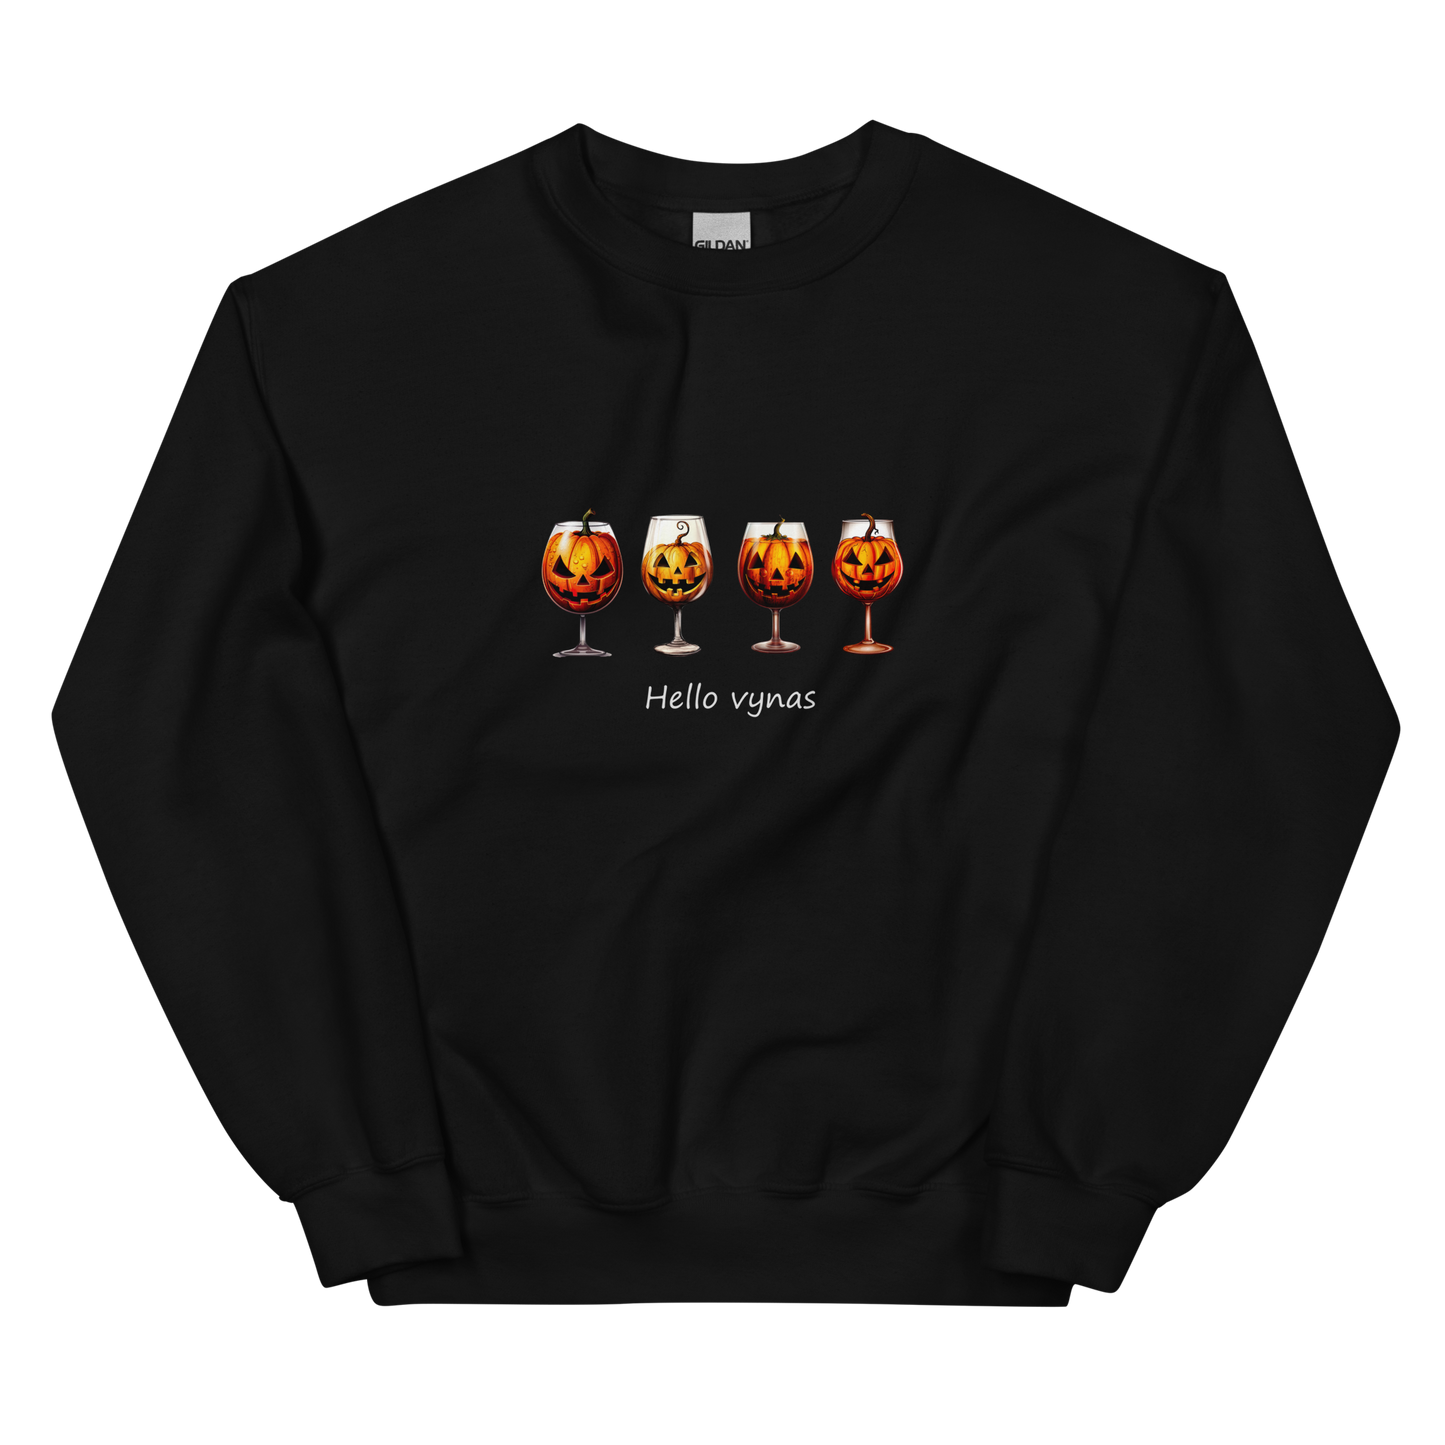 Unisex Halloween Sweater: Hello wine